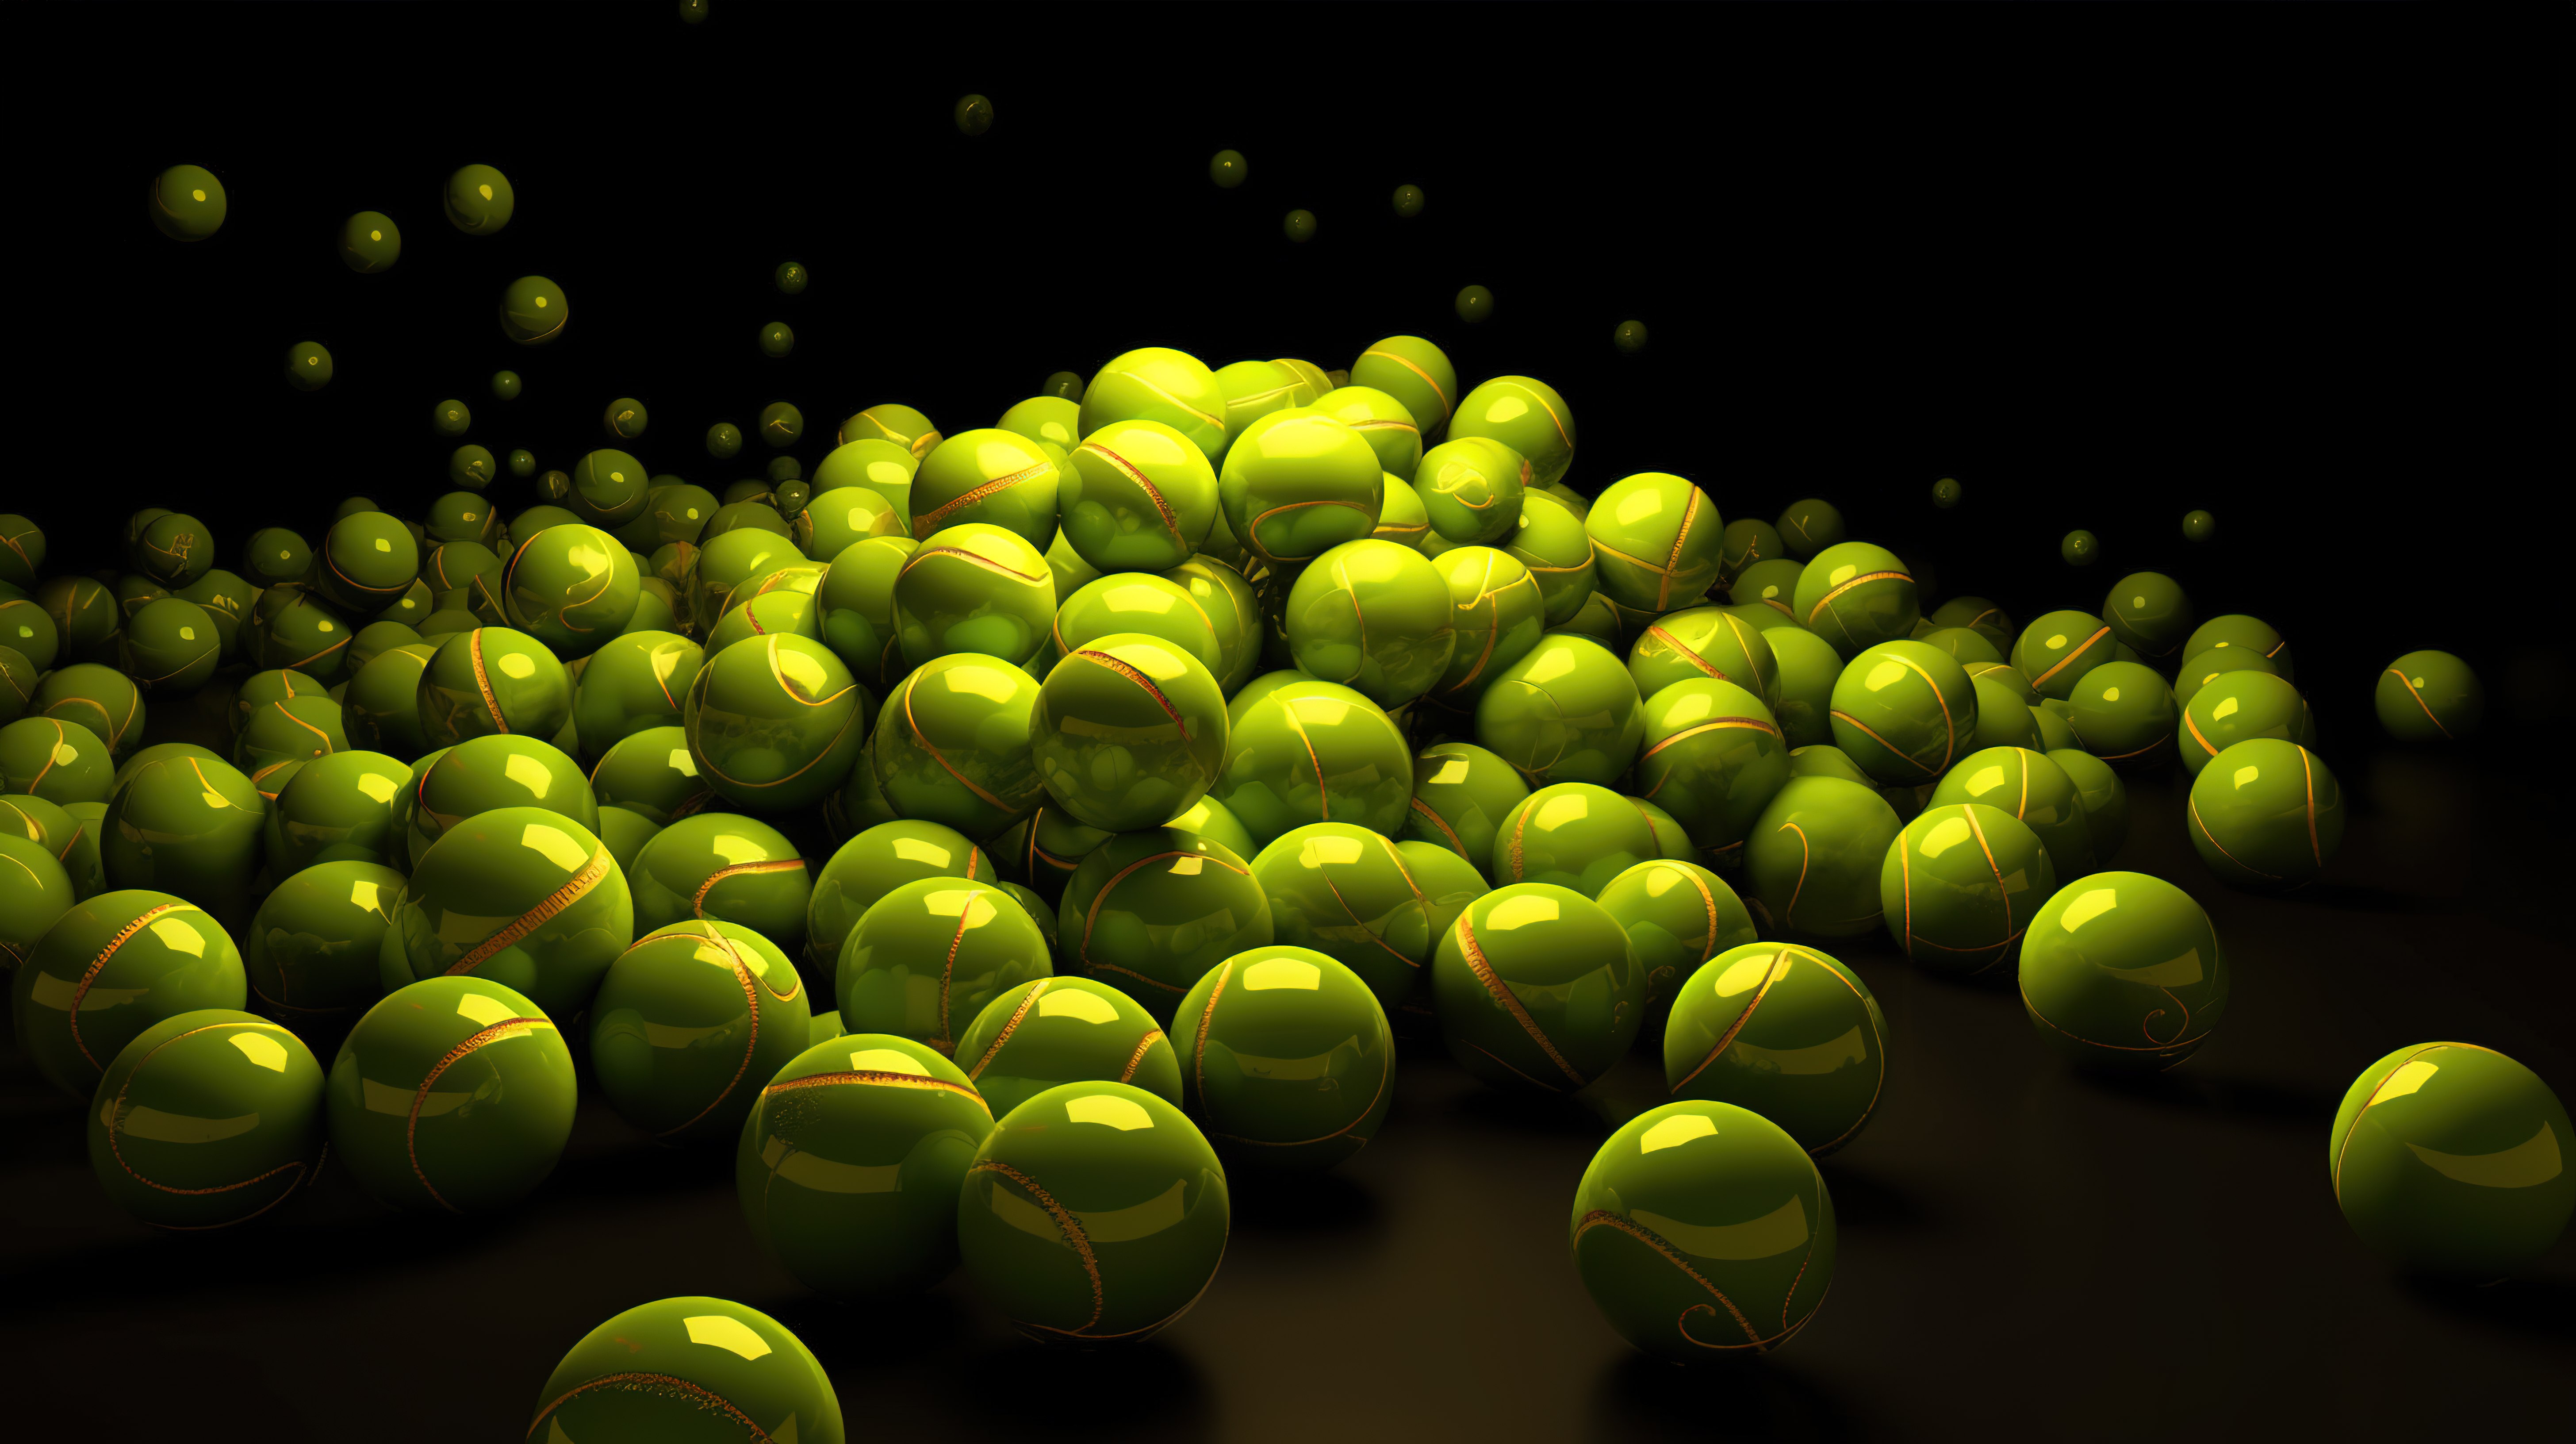 以 3d 呈现的黄色和绿色的各种网球图片